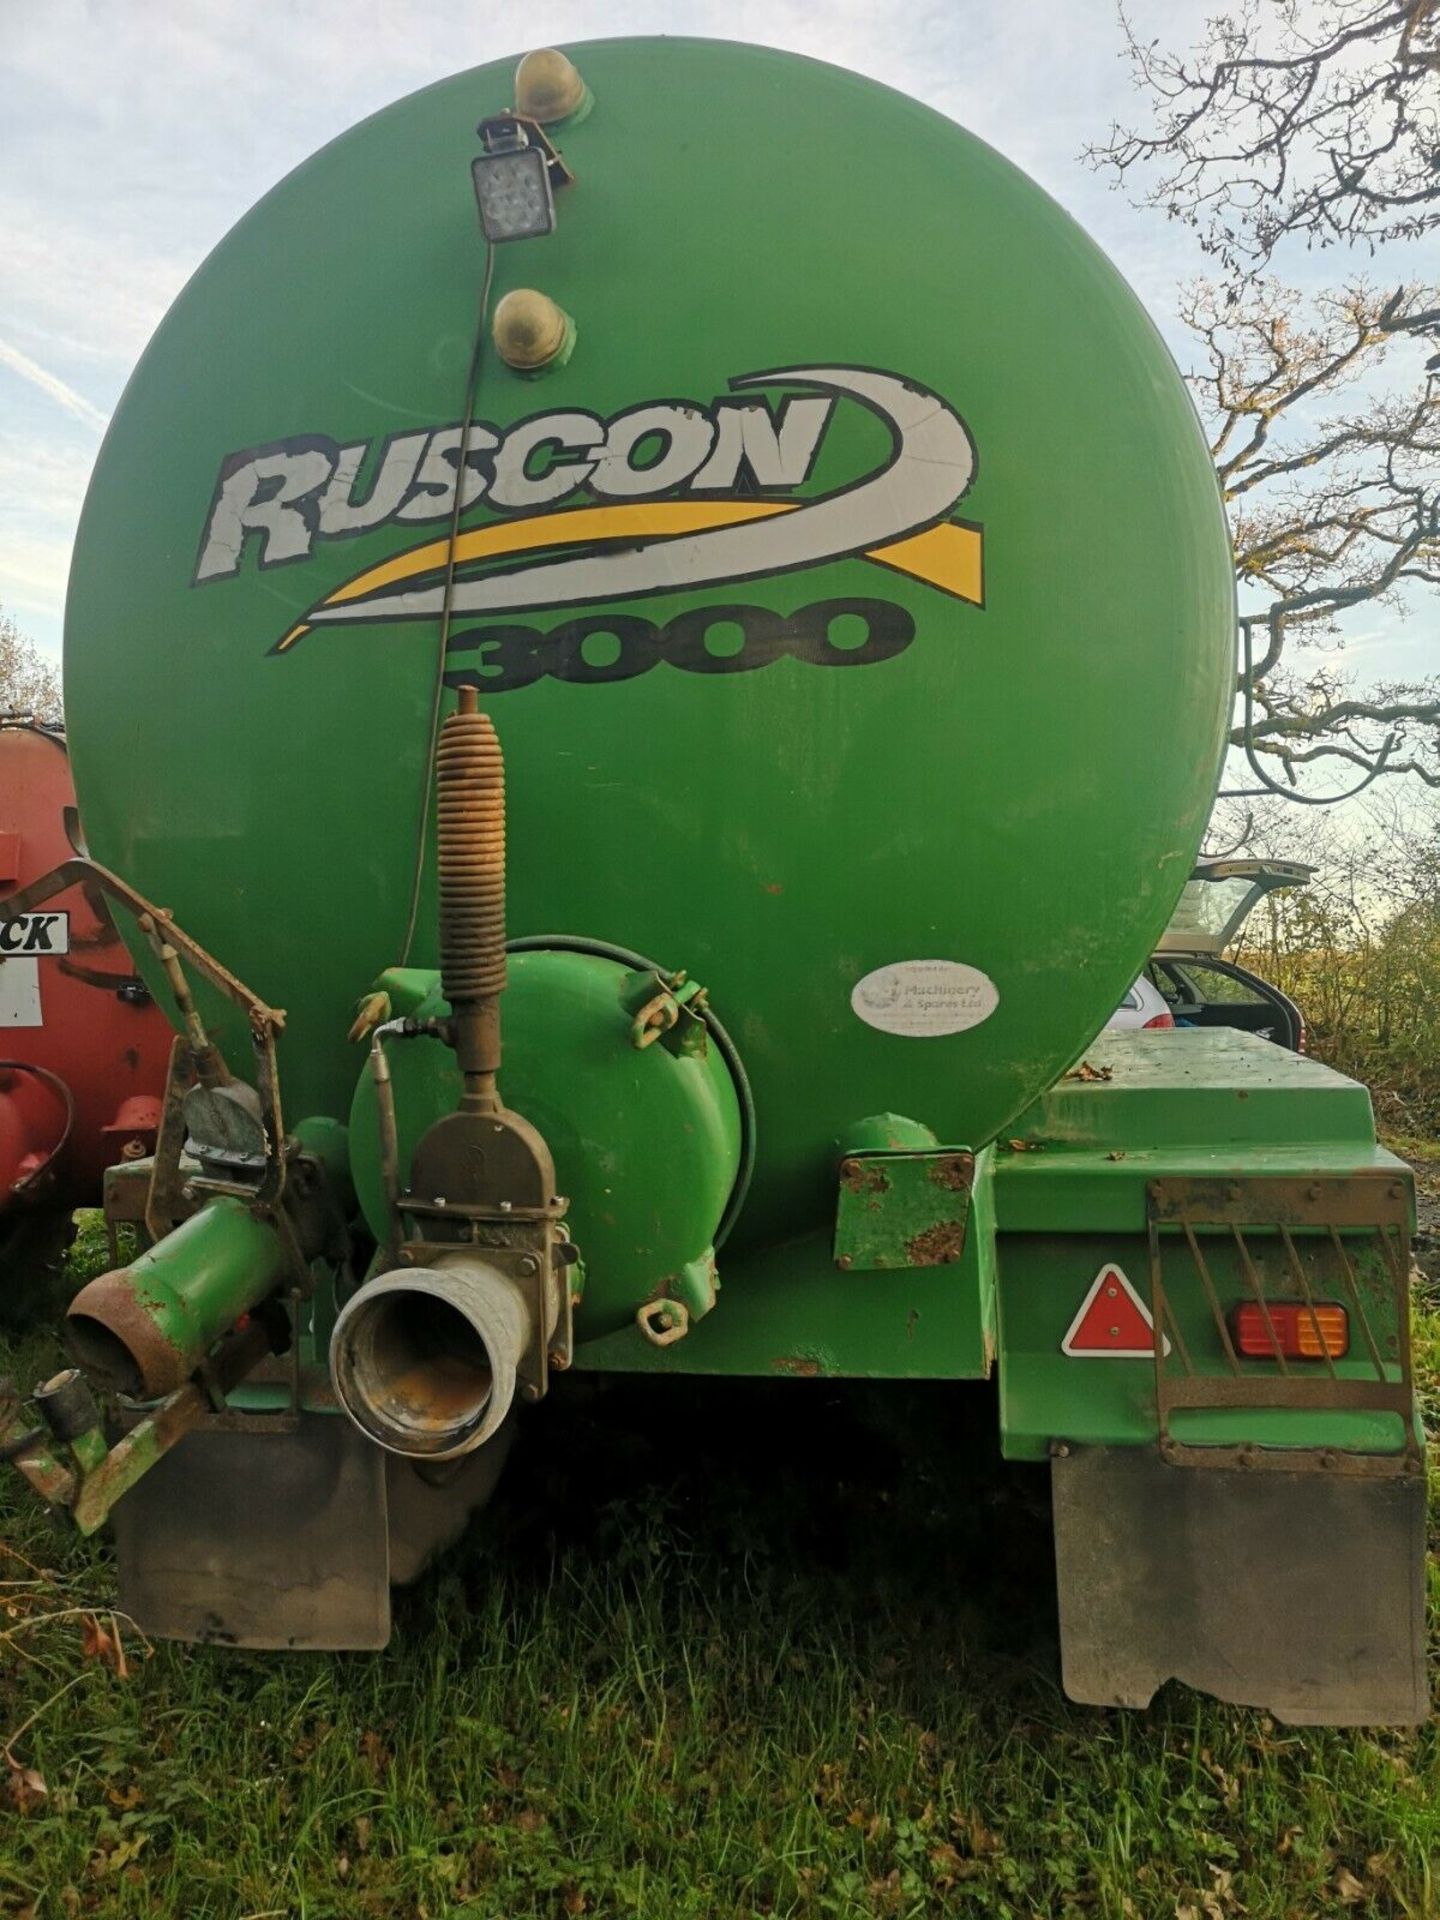 Ruscon 3000 Gallon Tanker on Super Singles - Image 4 of 8